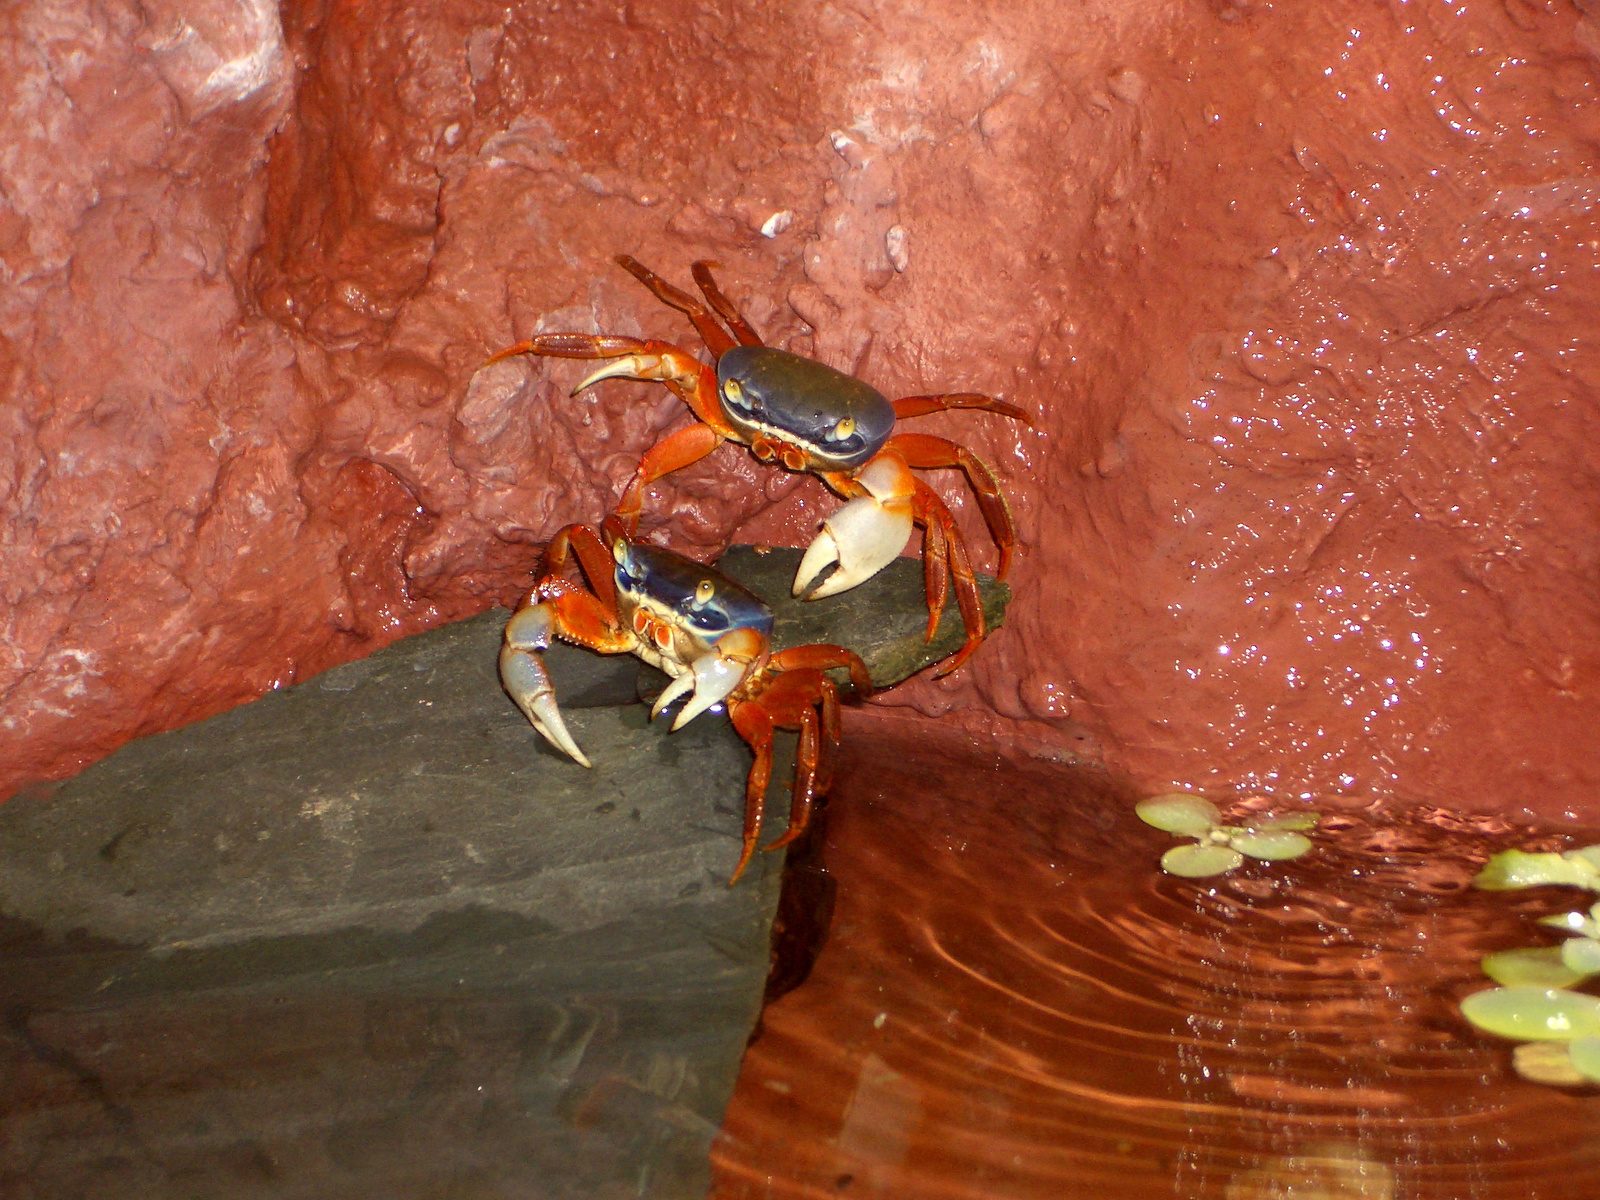 Rainbow crabs